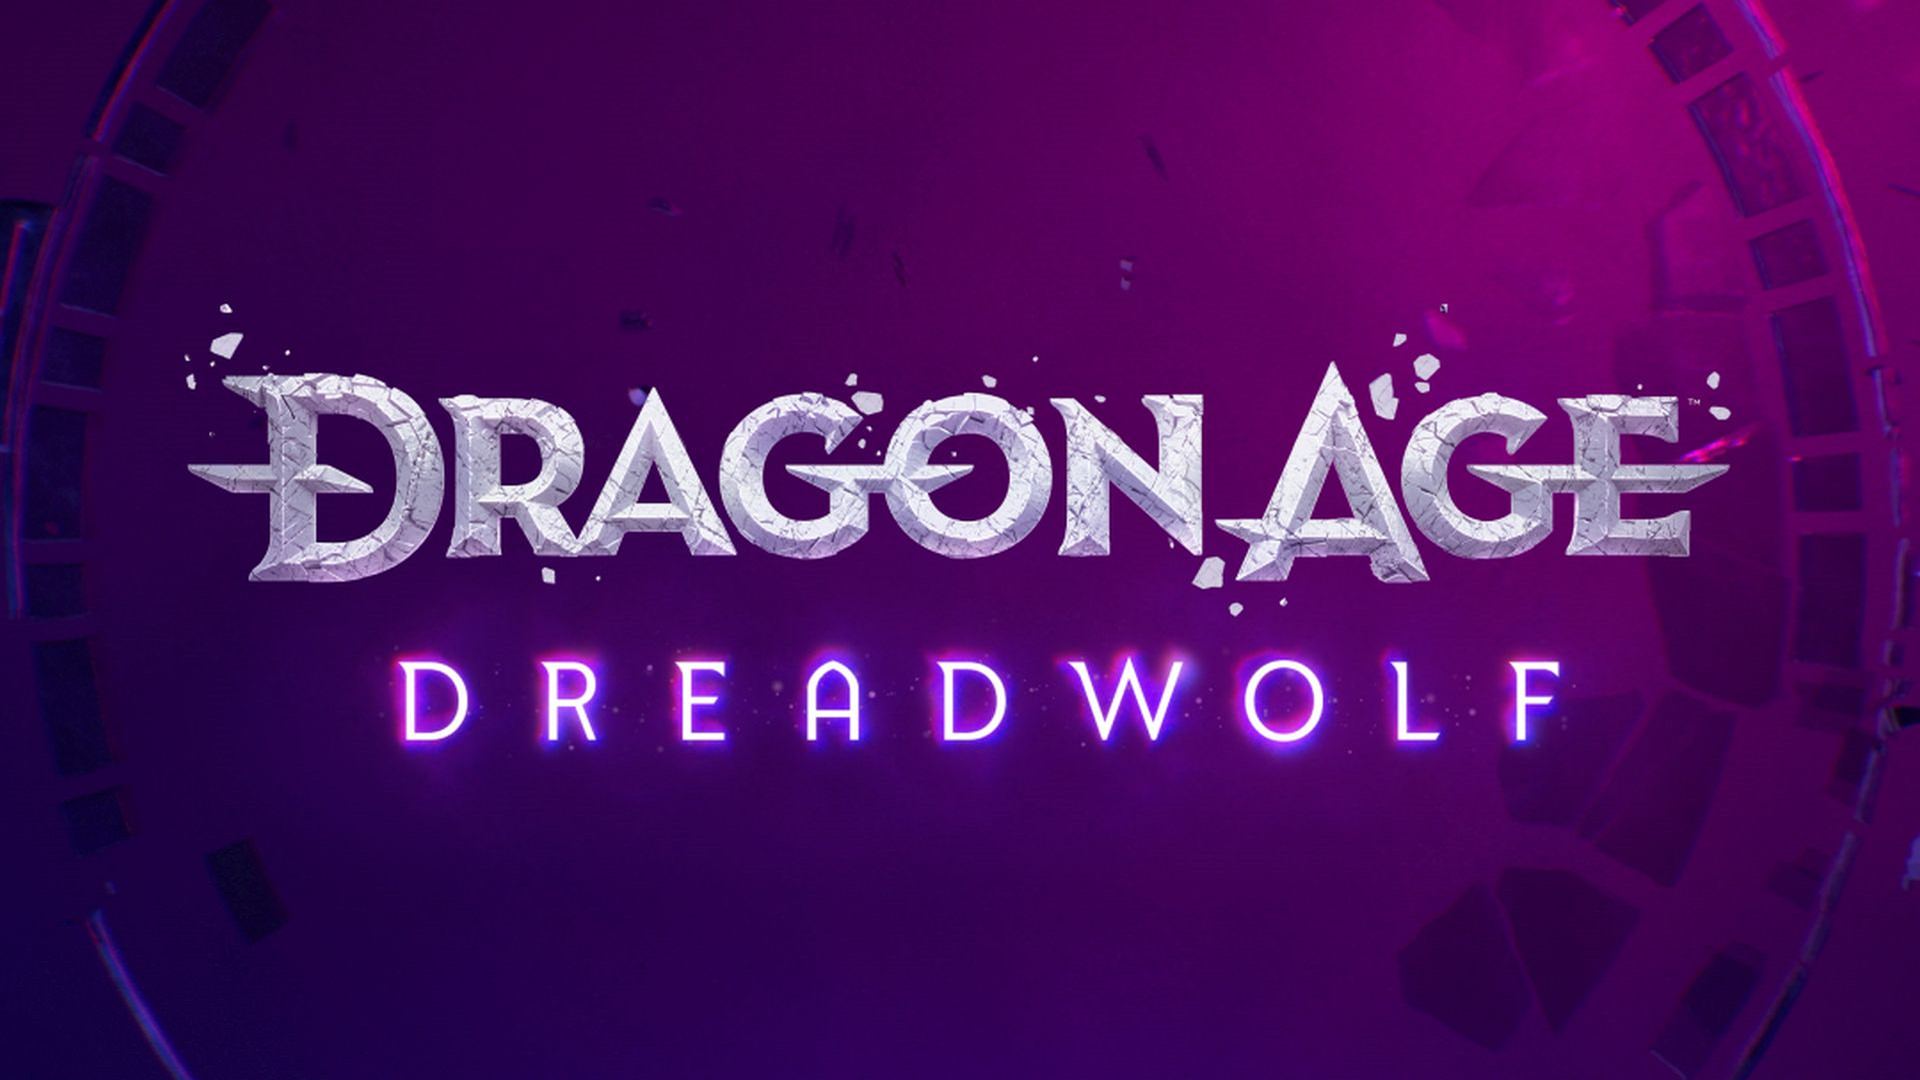 وجود سیستم مبارزه هک اند اسلش در اطلاعات جدید فاش شده Dragon Age Dreadwolf